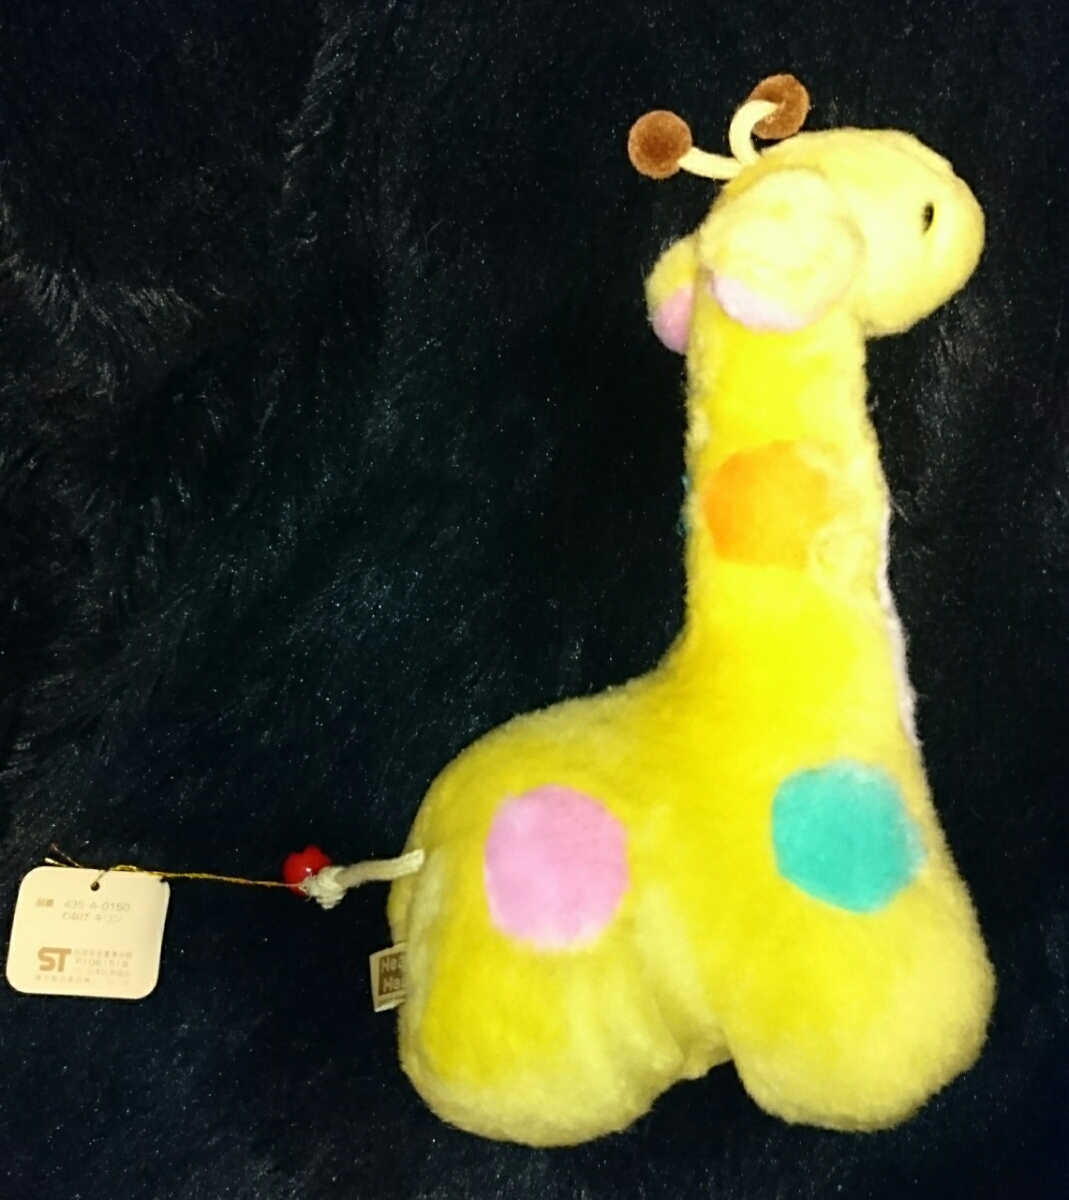  новый товар nakajimaNAKAJIMA Rav Lifan si- домашнее животное жираф мягкая игрушка ... кукла Showa Retro 80 годы колесо бросание игрушка Showa Retro игрушка 